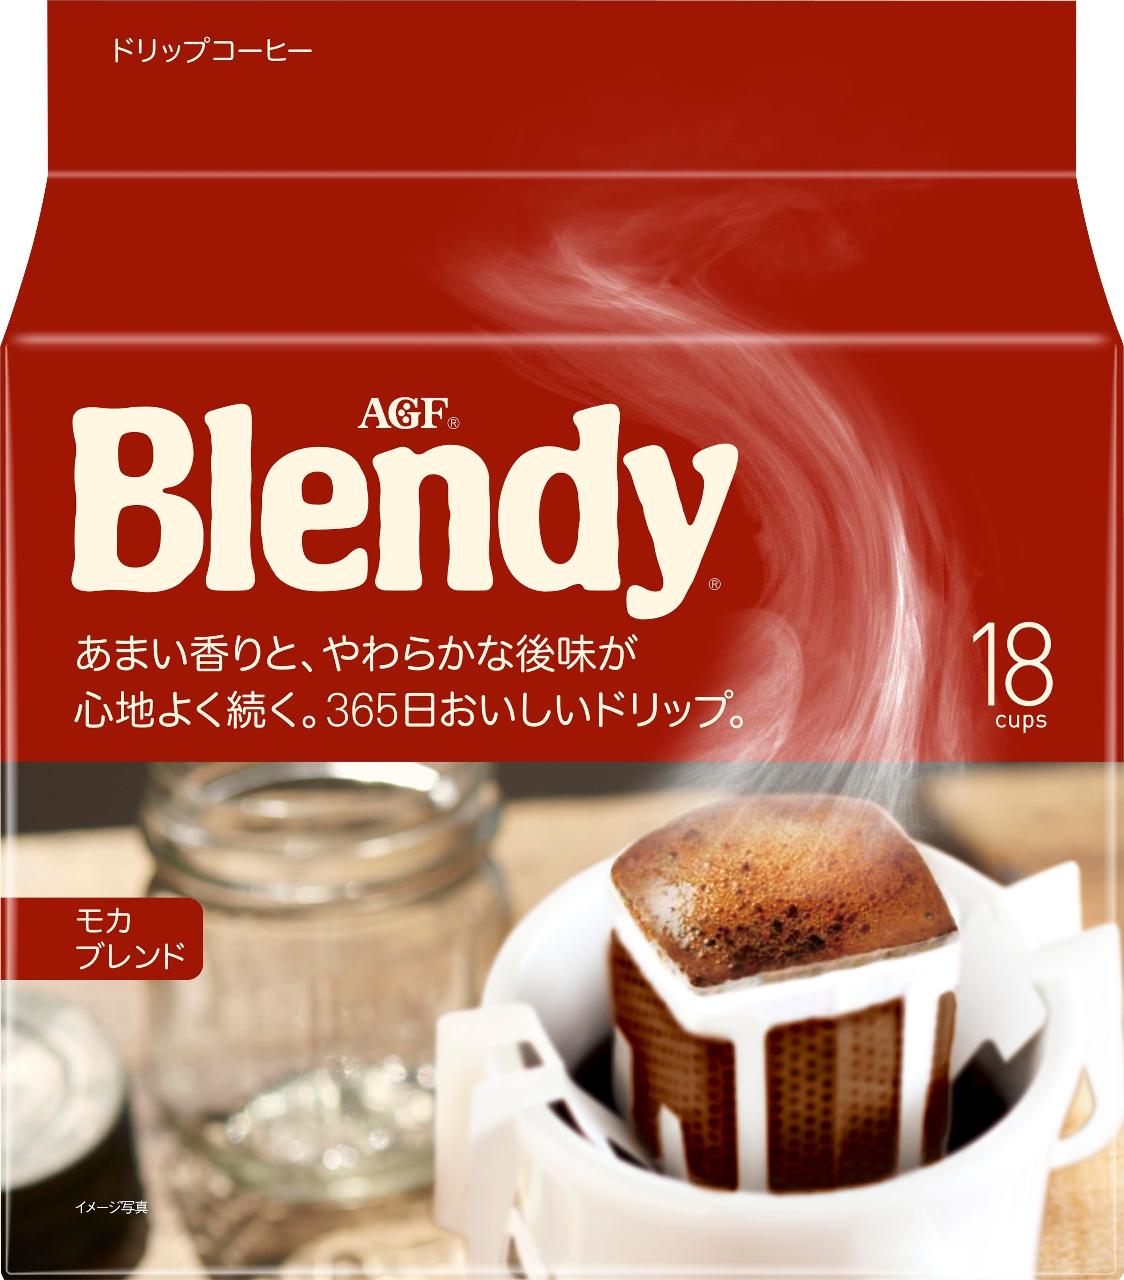 超歓迎された】 AGF ブレンディ レギュラーコーヒー ドリップコーヒー スペシャルブレンド 7g 100袋入 2箱セット Blendy 